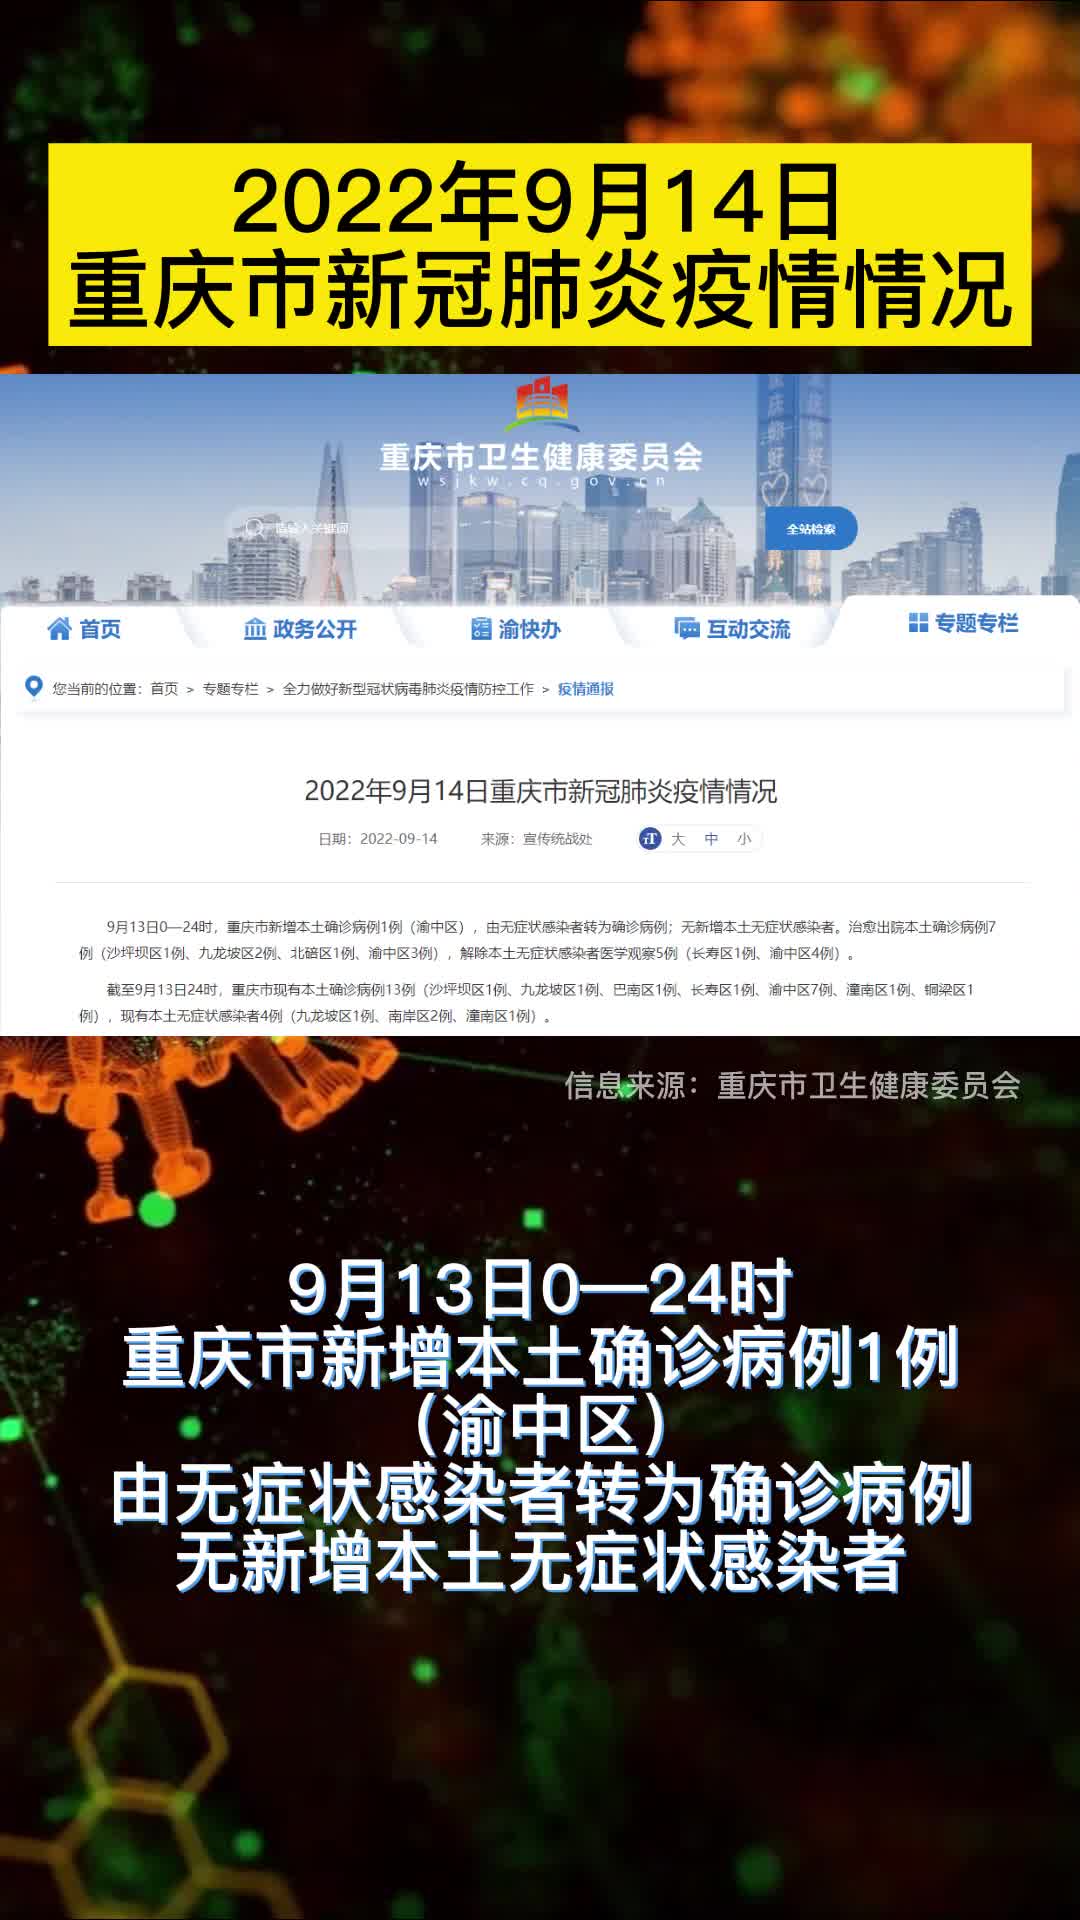 2022年9月14日重庆市新冠肺炎疫情情况